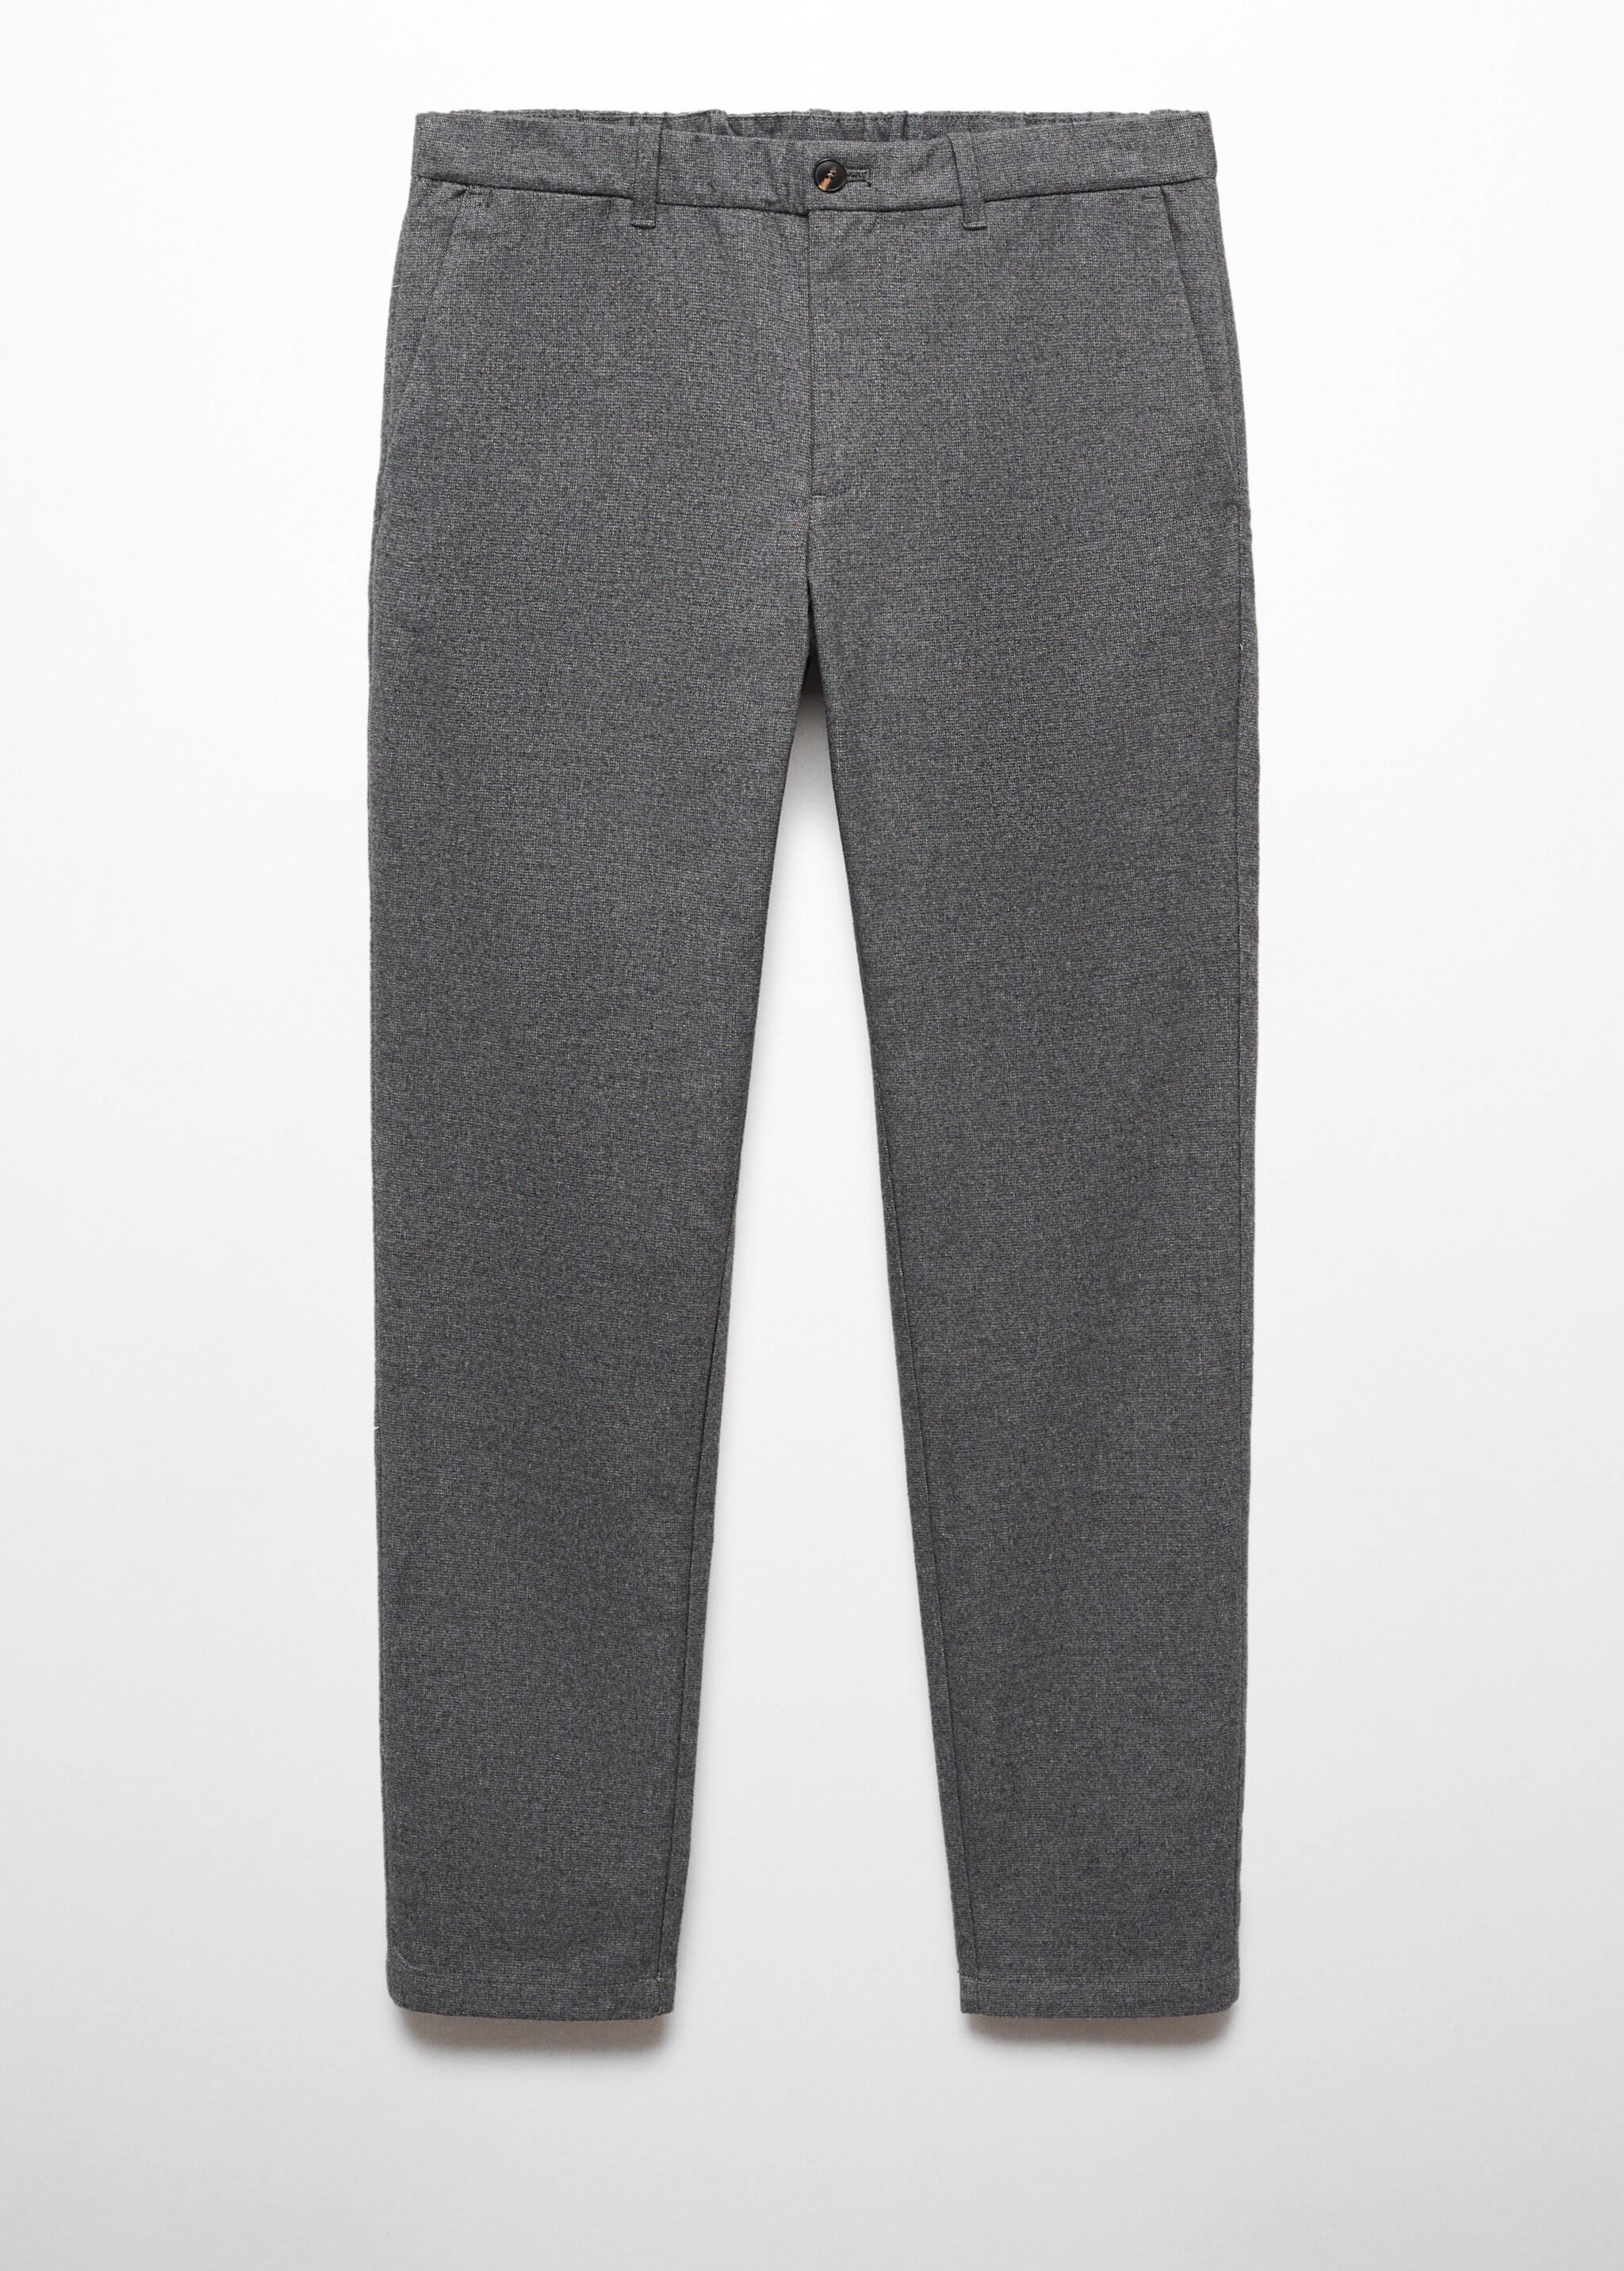 Pantalón slim fit algodón estructura - Artículo sin modelo